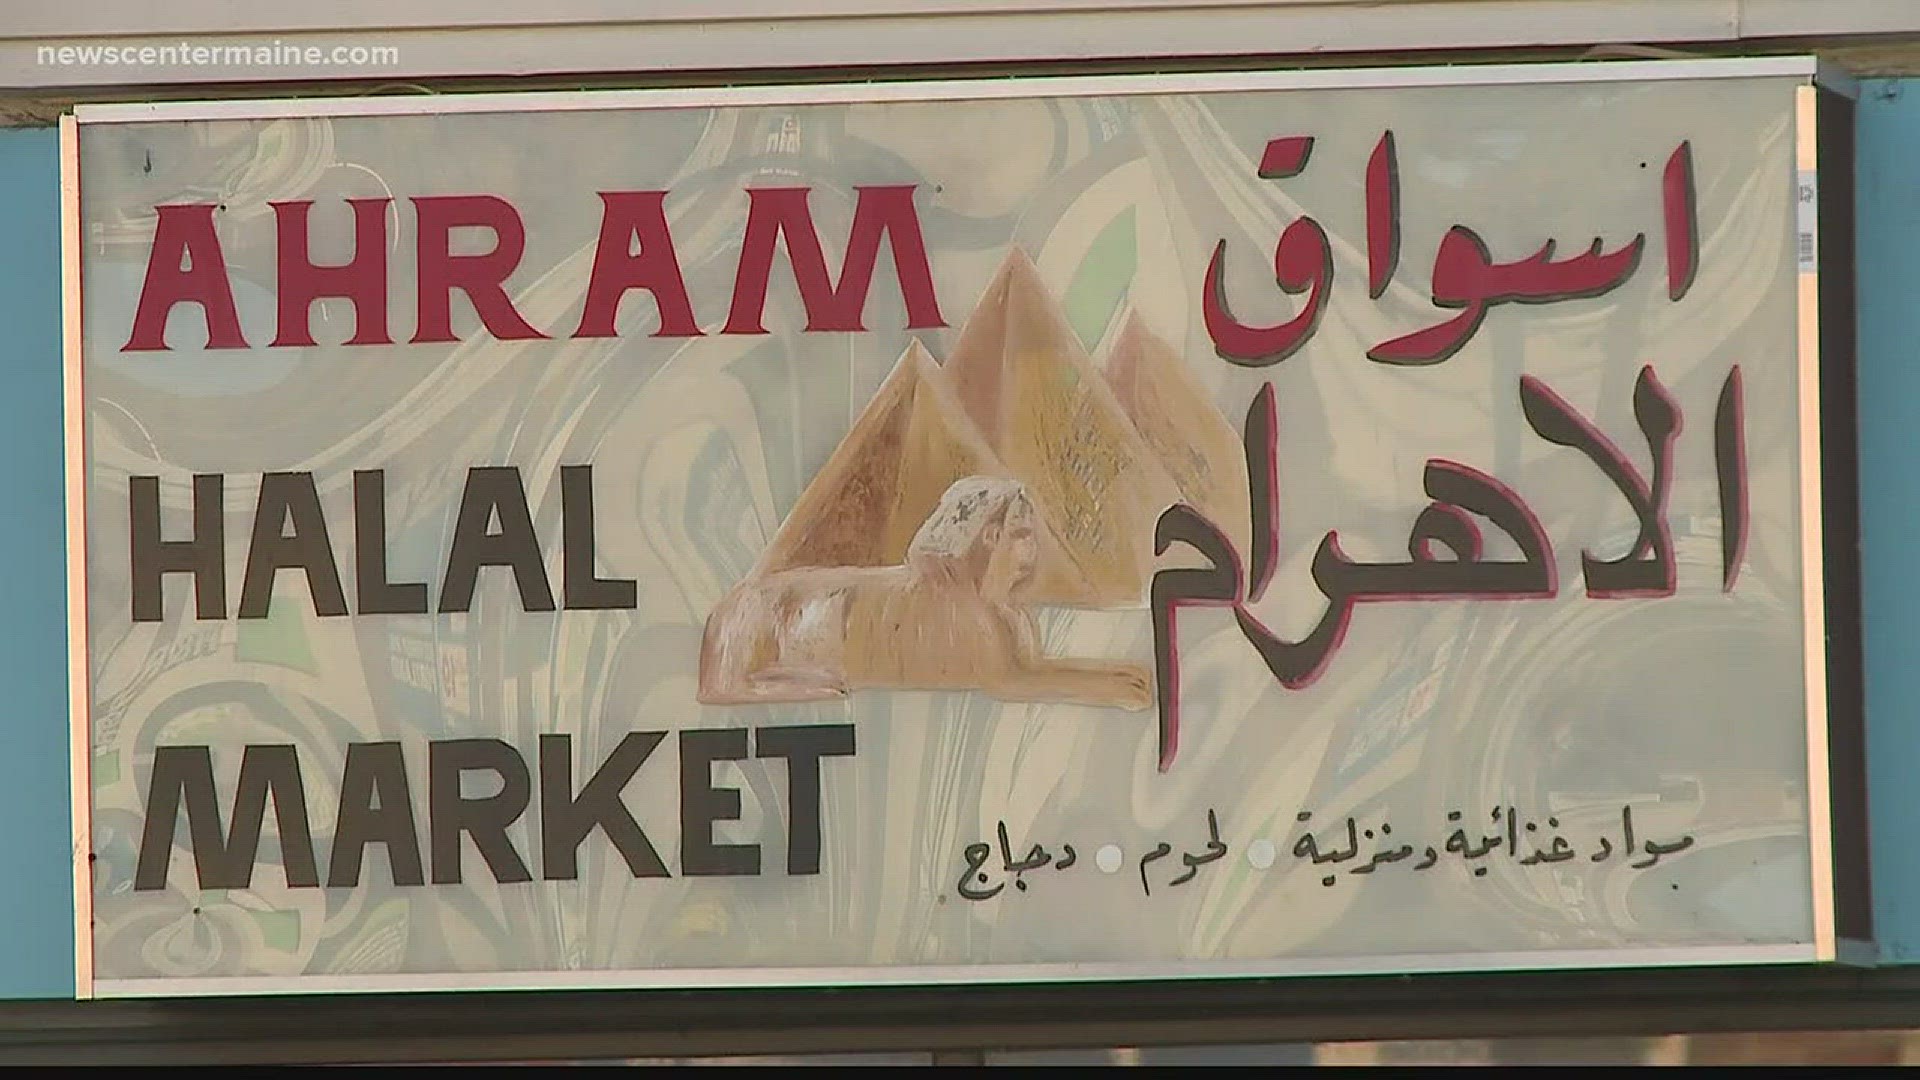 Ahram Halal Market